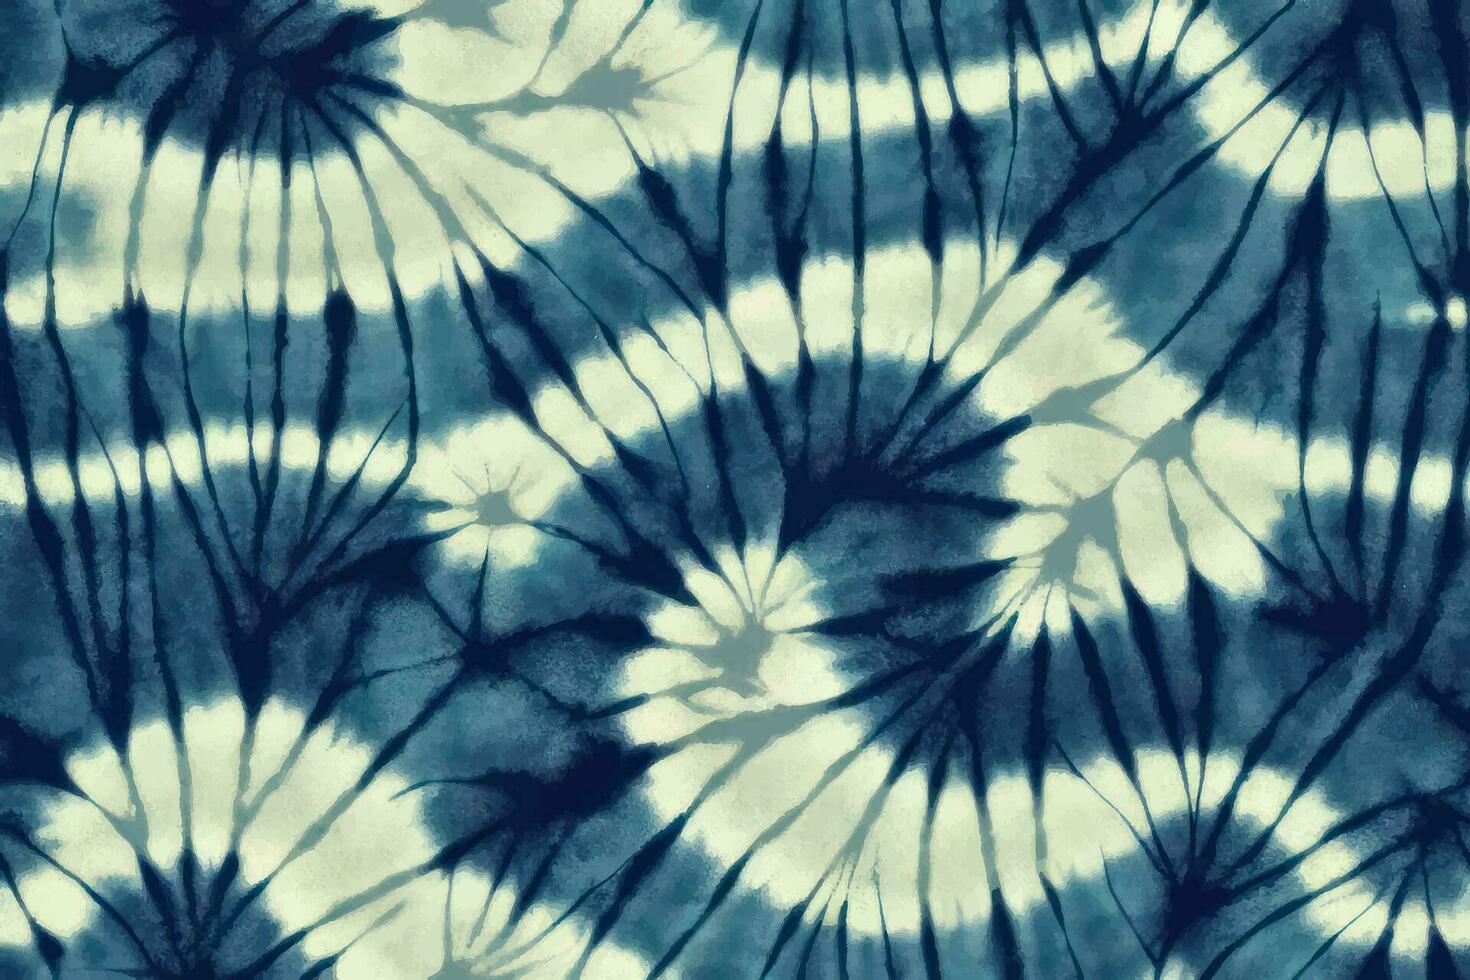 Shibori tye sterben abstrakt Krawatte Farbstoff Farbe Bürste Batik Tinte Strudel Spiral- Stoff retro botanisch Kreis Design geometrisch wiederholen Zeichnung Fliese Vektor Grün braun dunkel Blau Farben , glatt Blau